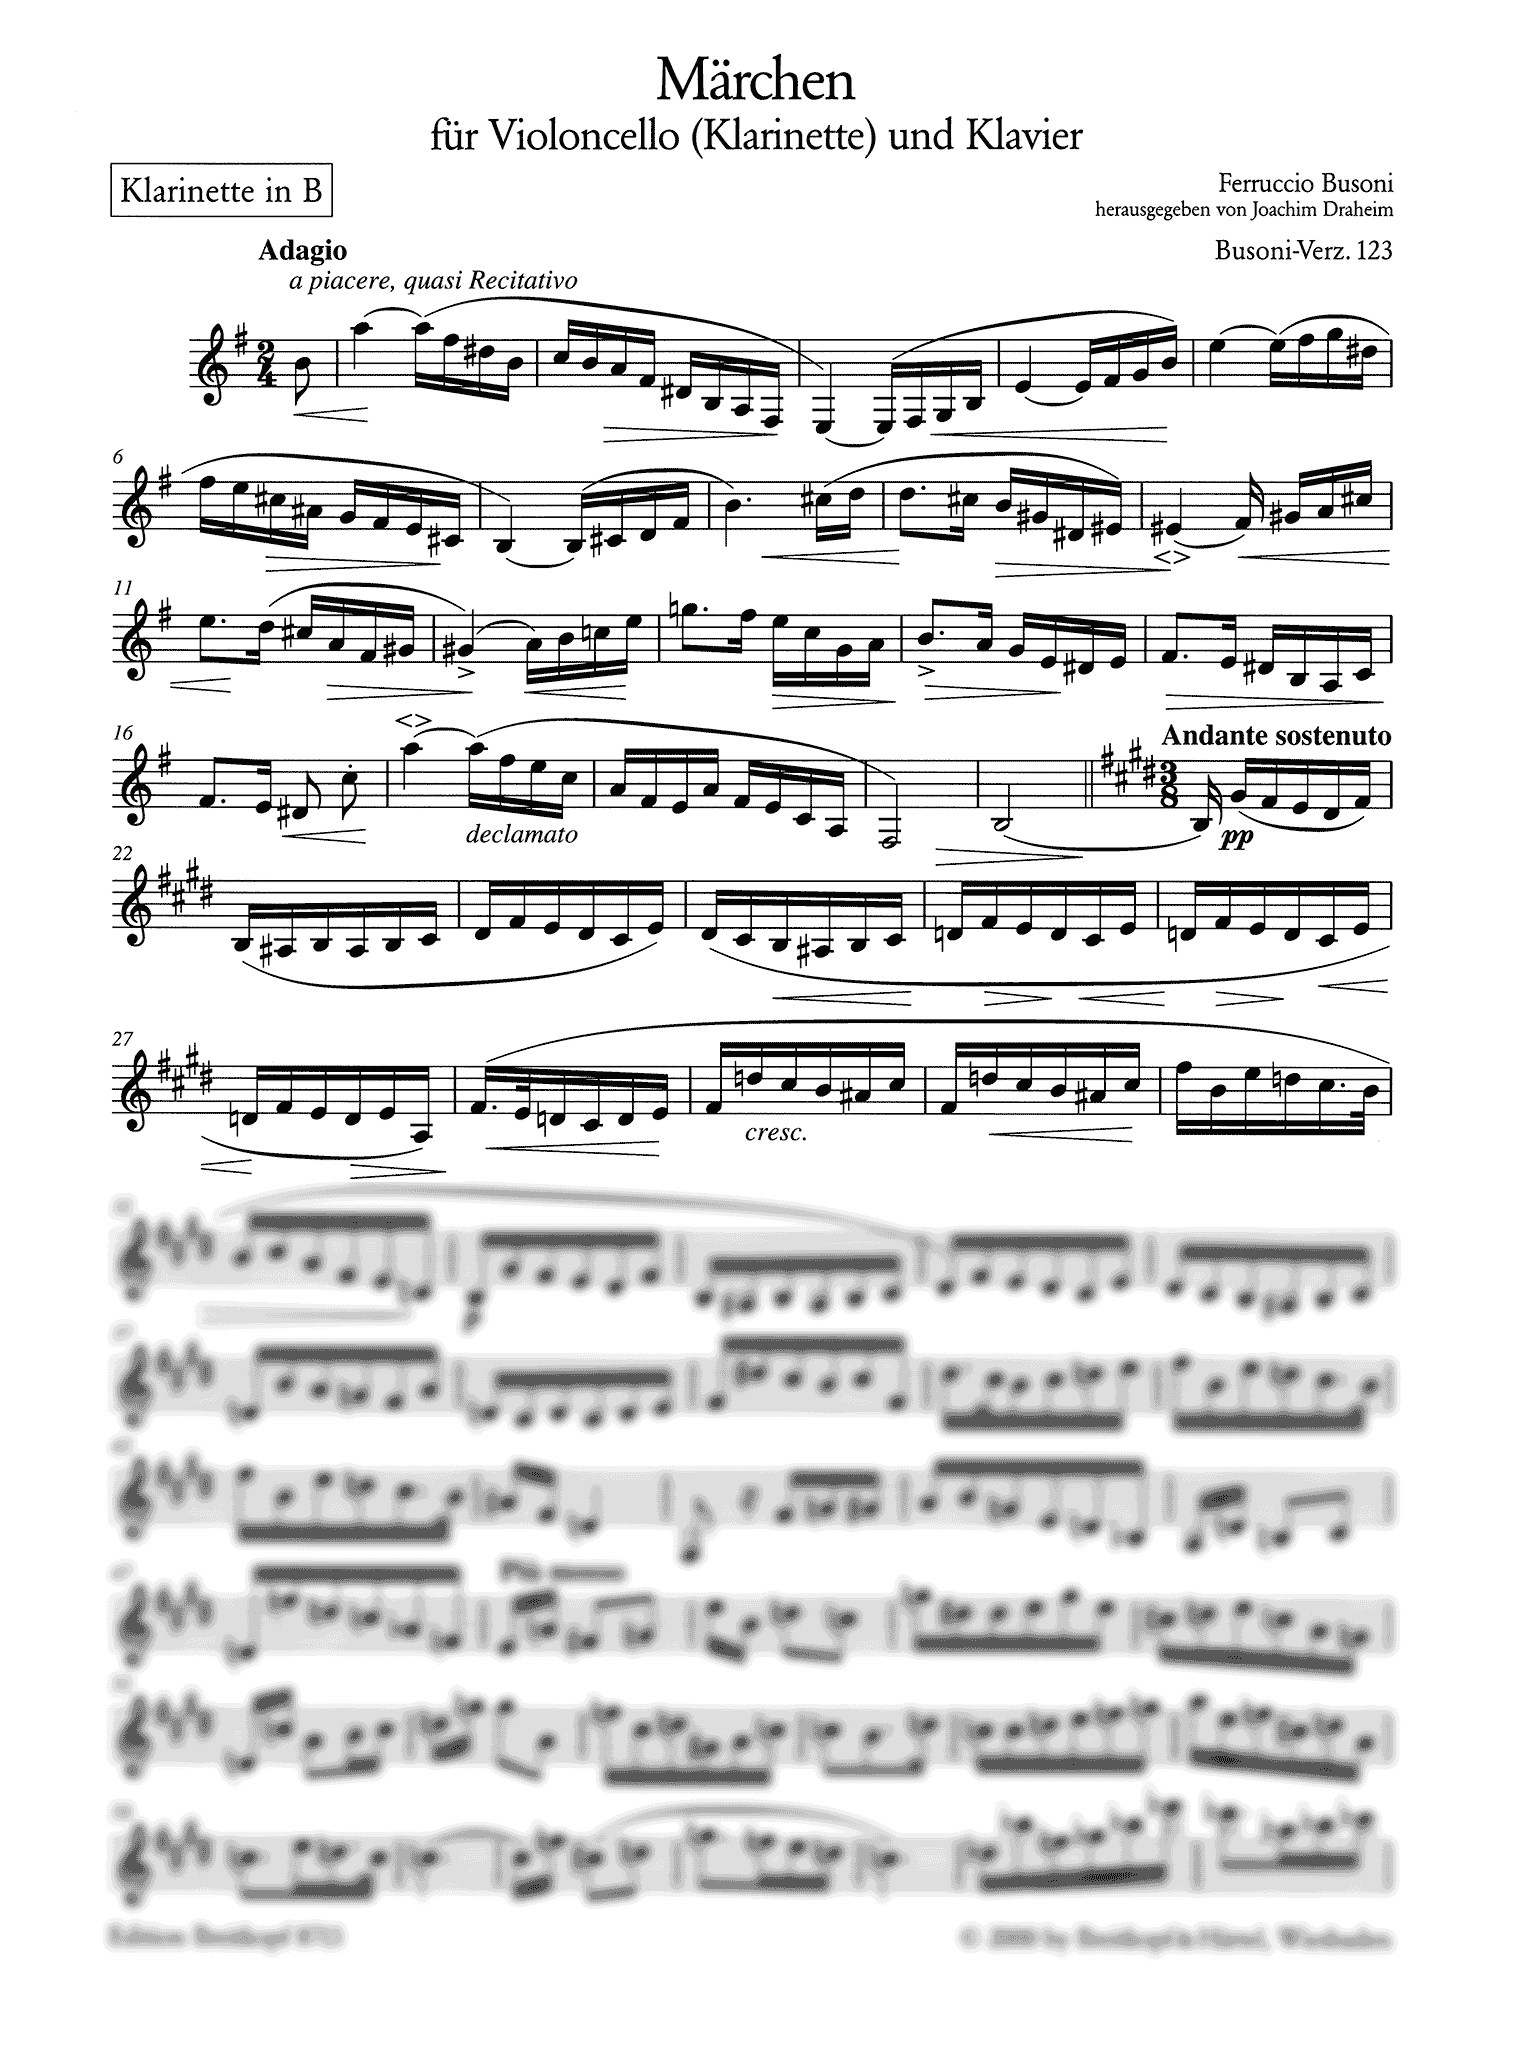 Busoni Märchen, BV 123 clarinet part